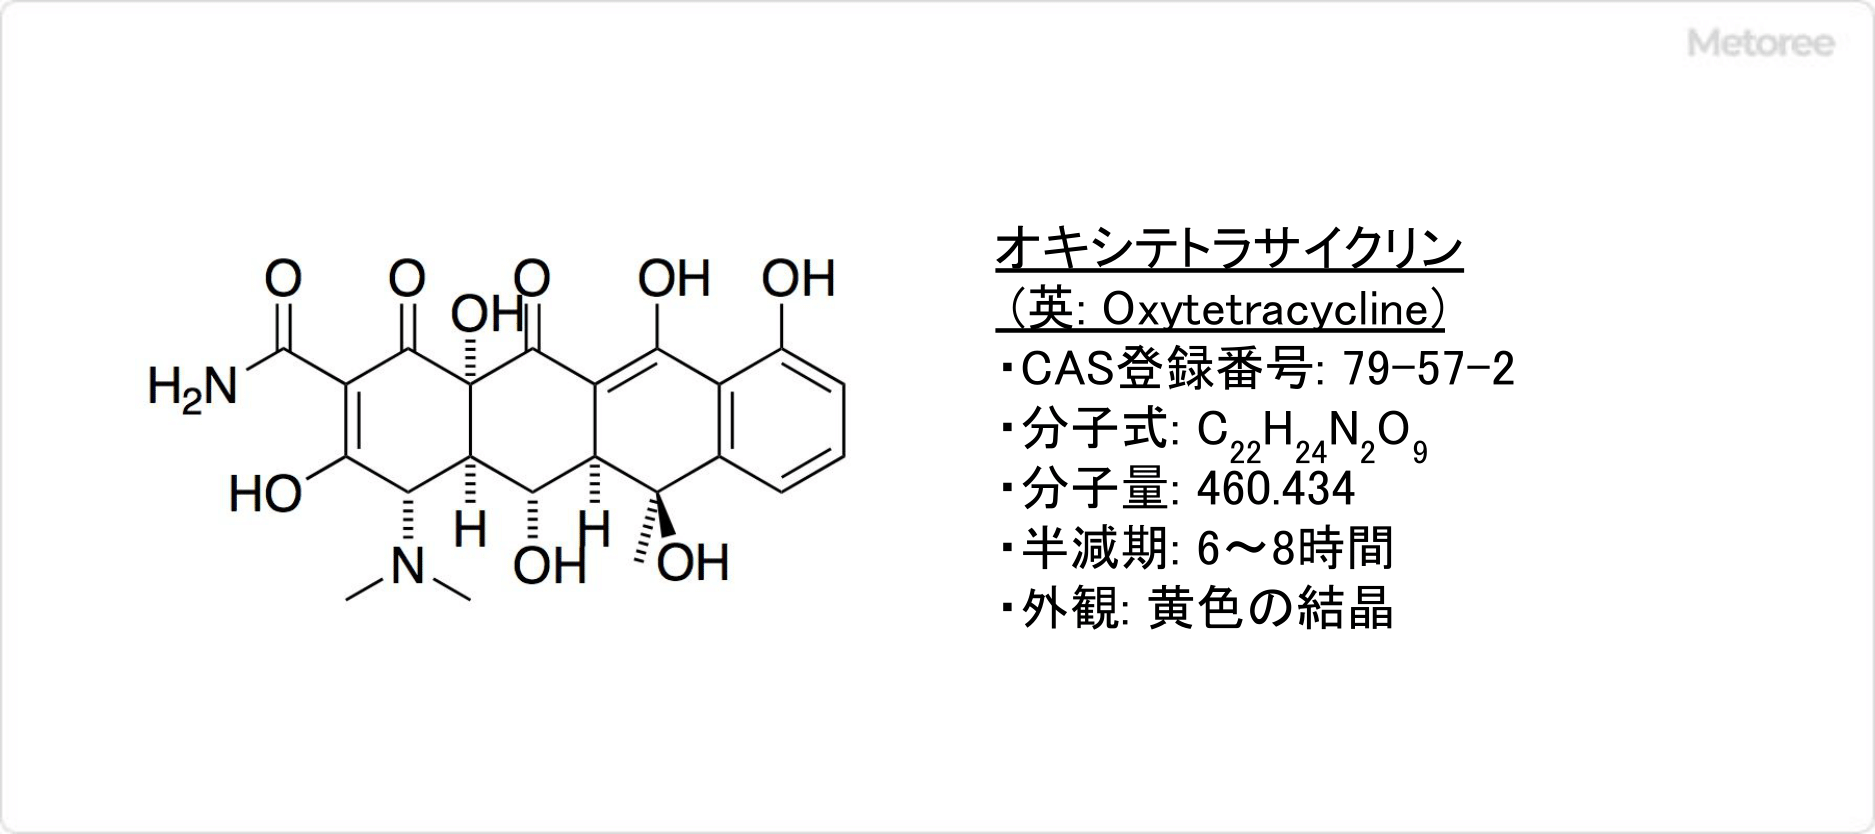 オキシテトラサイクリンの基本情報